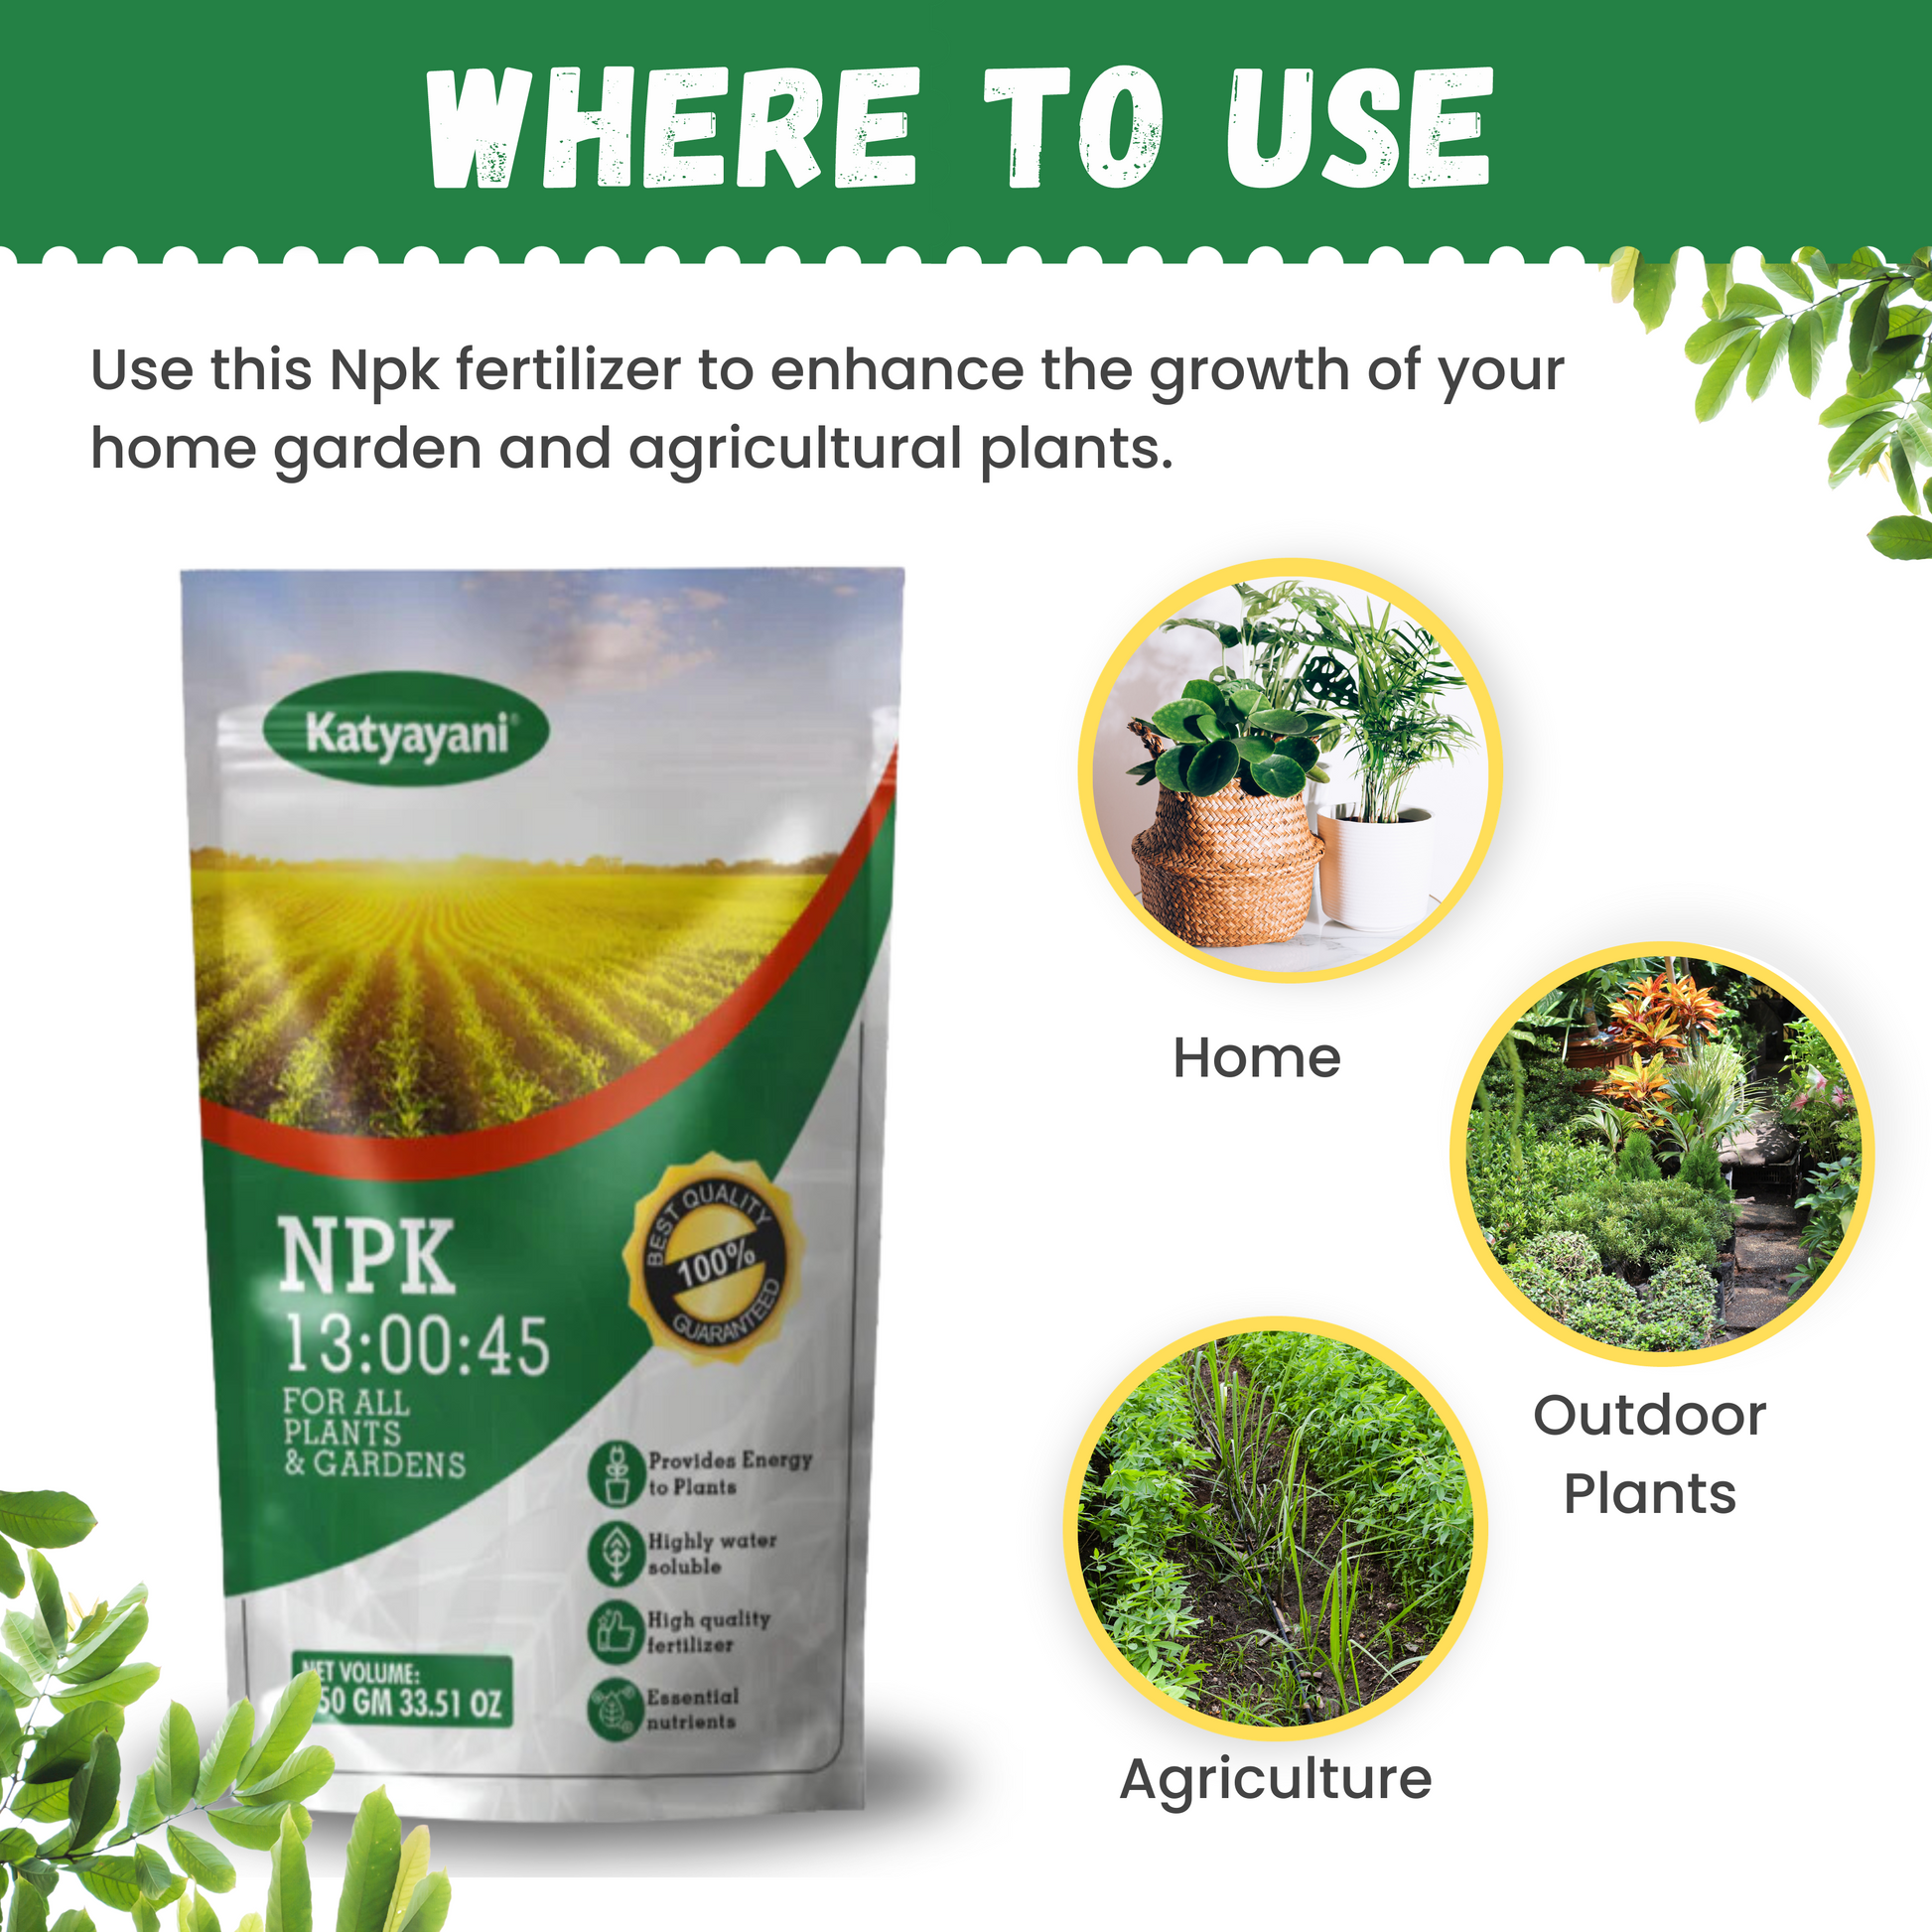 Katyayani NPK 13 00 45 Fertilizer uses